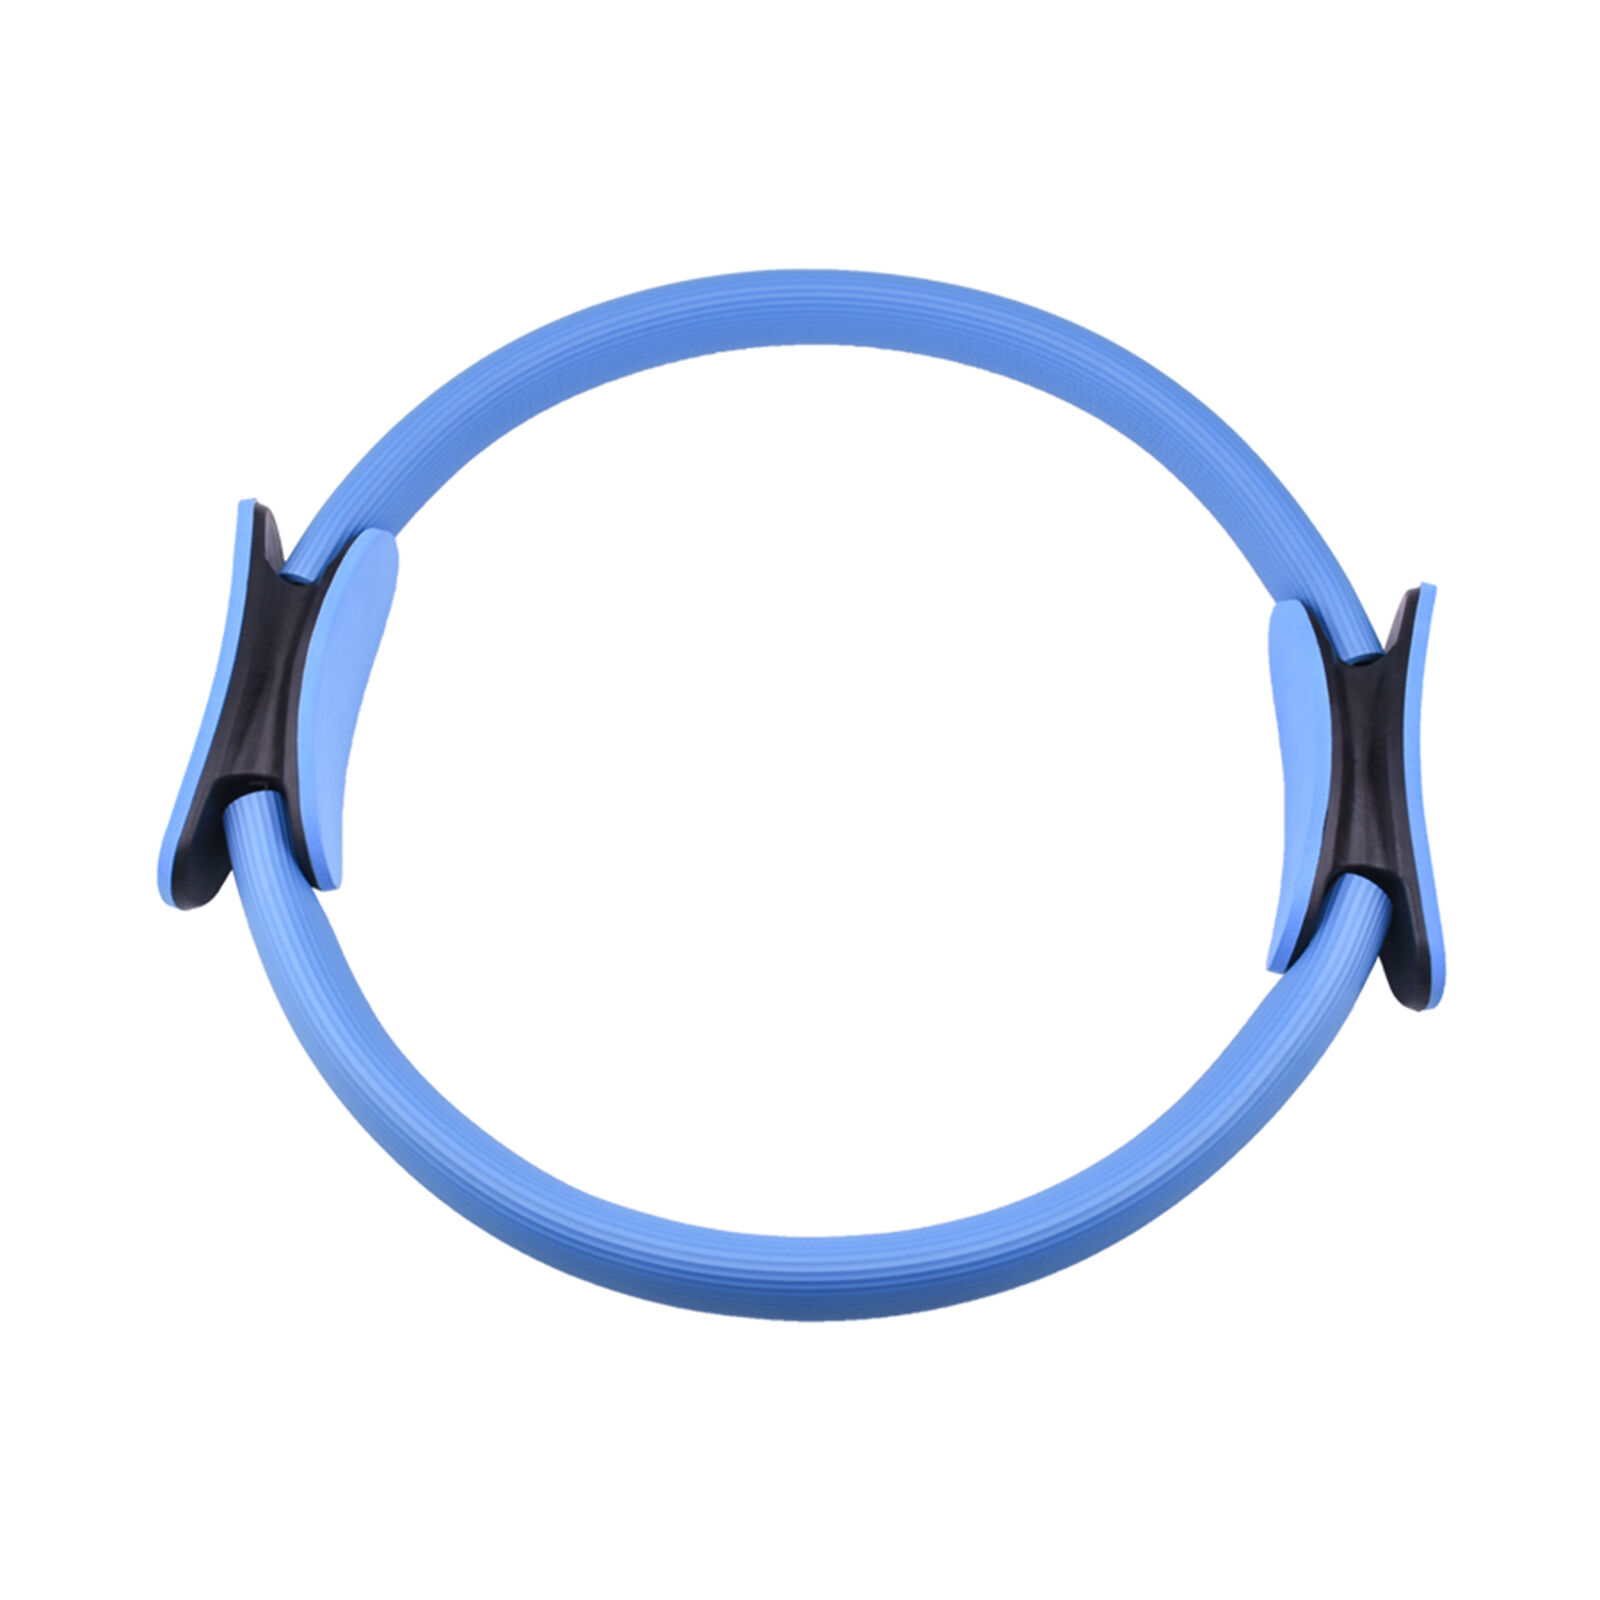 Кольцо изотоническое для пилатеса UNIX Fit 38 см, голубой UNIX Fit™ Кольца для пилатеса изотонические